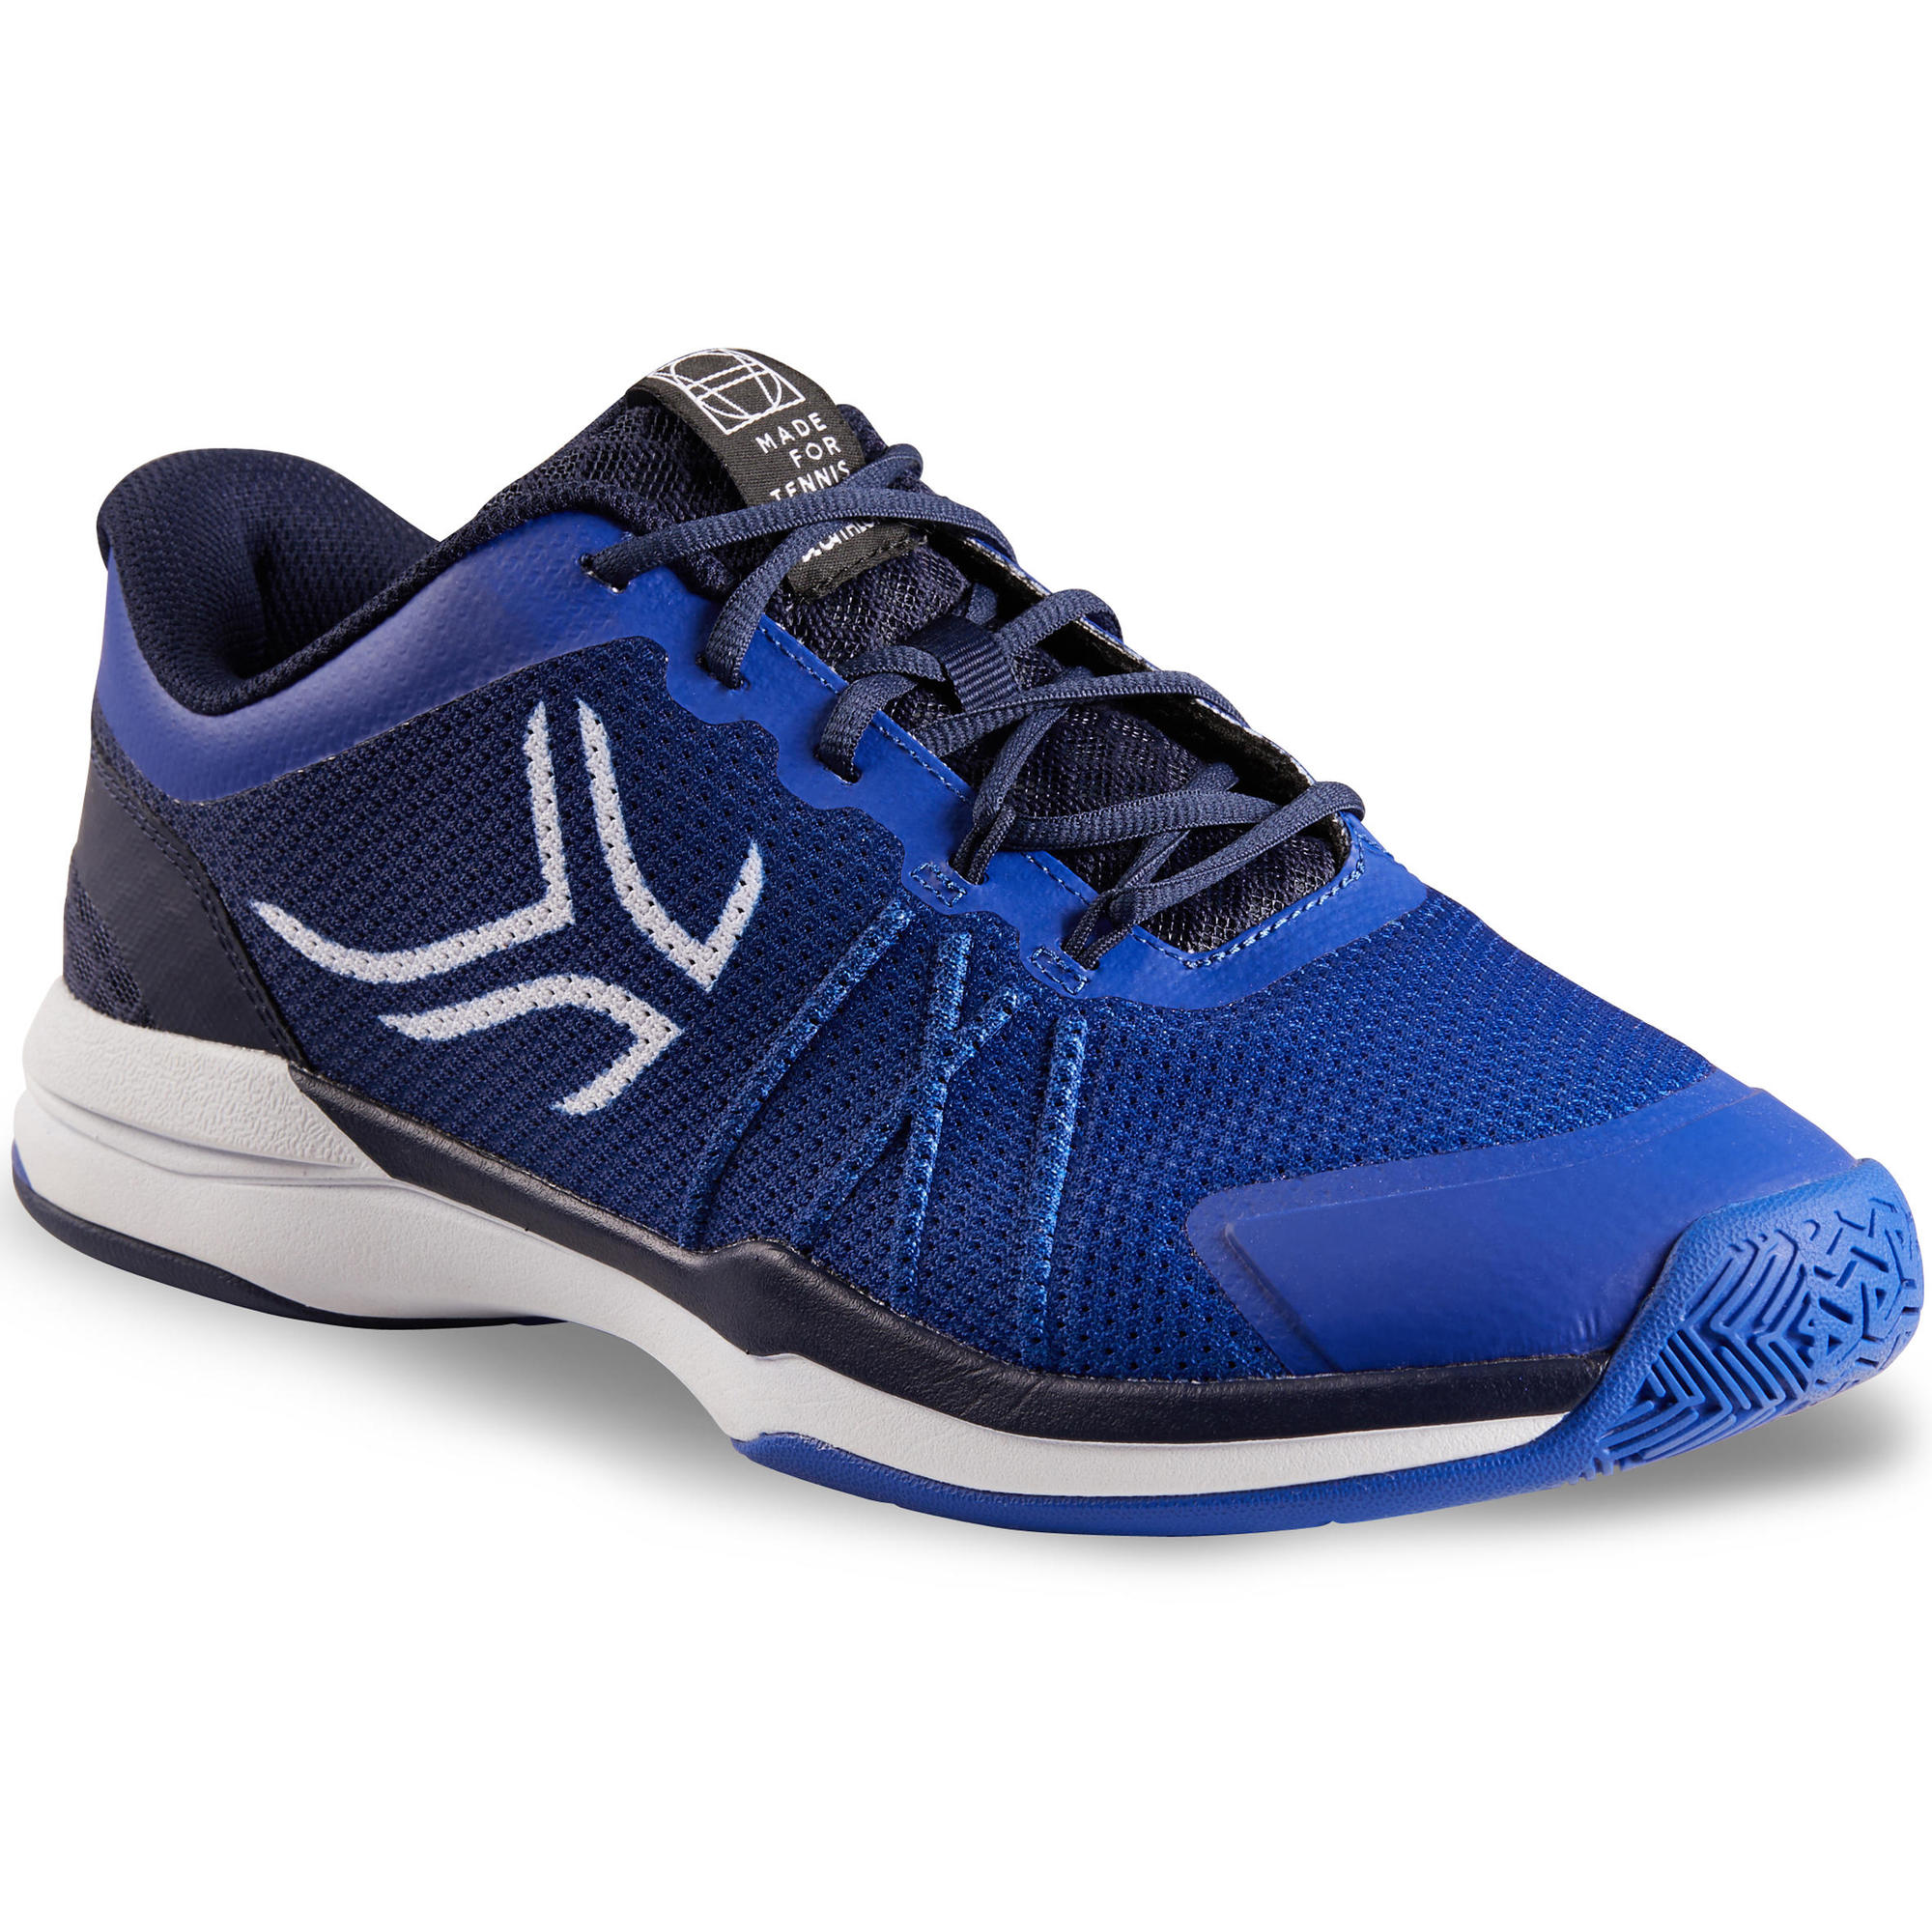 TS590 Multi-Court Tennis Shoes - Blue | artengo